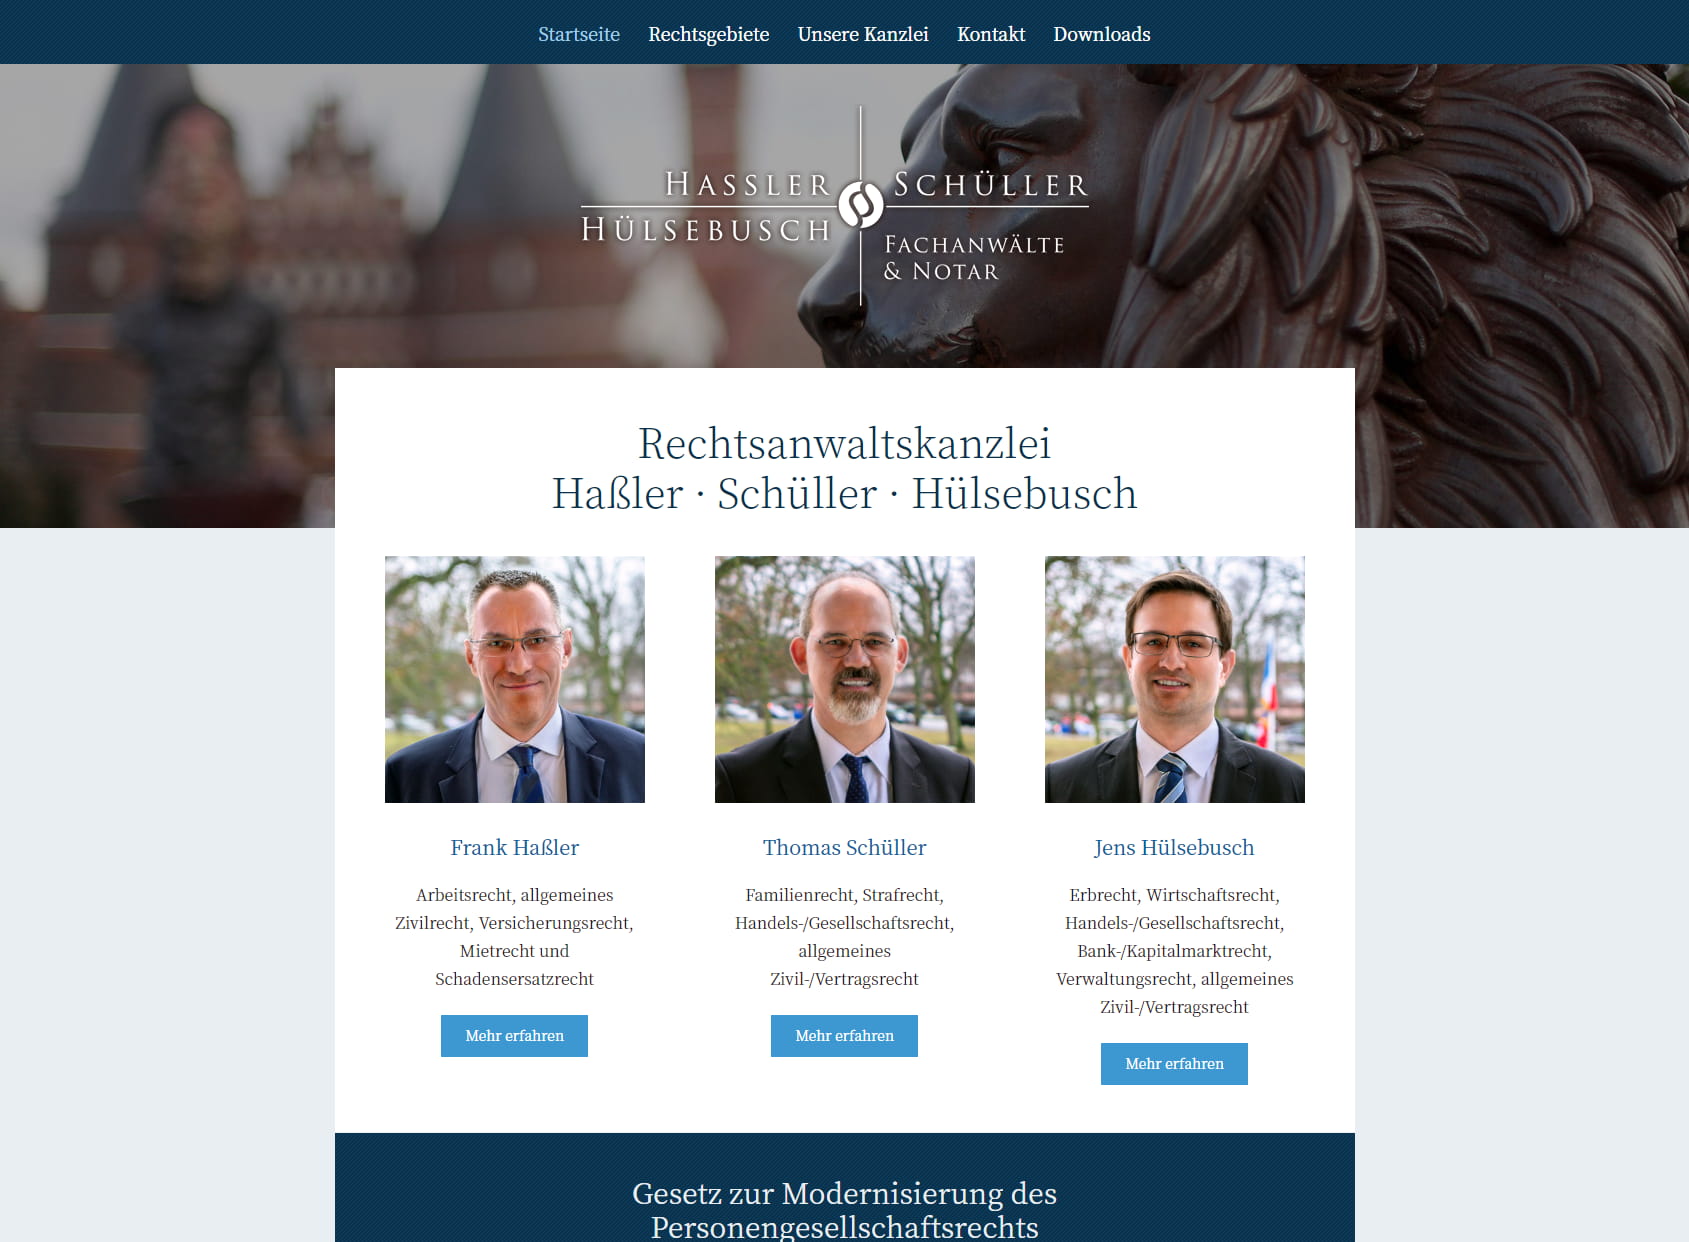 Rechtsanwälte & Notar Haßler | Schüller | Hülsebusch in Lübeck